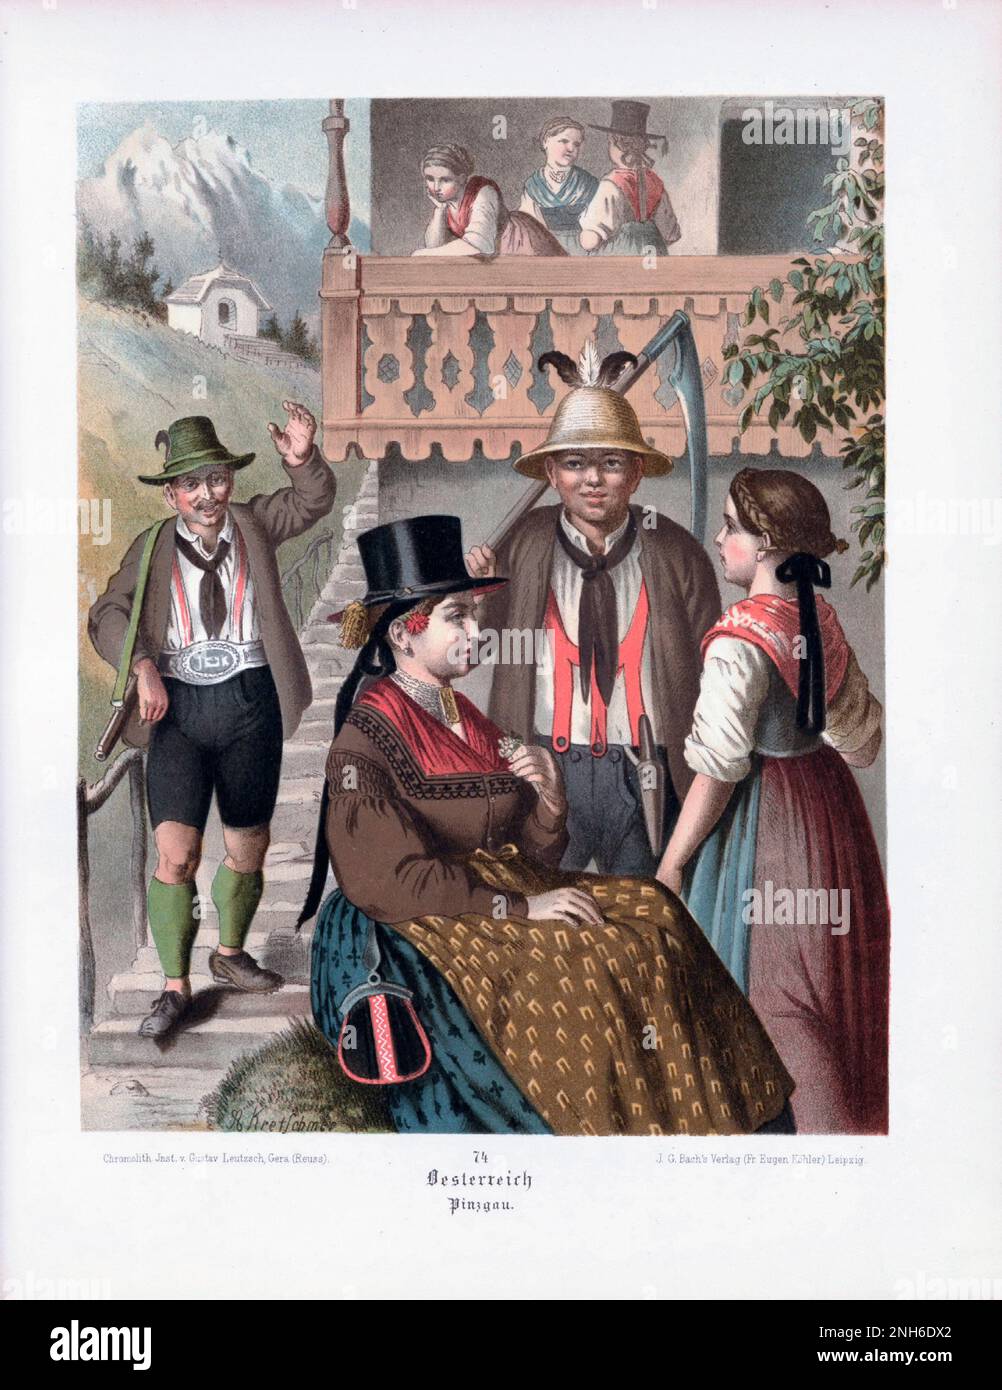 Deutsches Volkskleid. Österreich (Geramn: Österreich), Pinzgau. Lithographie des 19. Jahrhunderts. Stockfoto